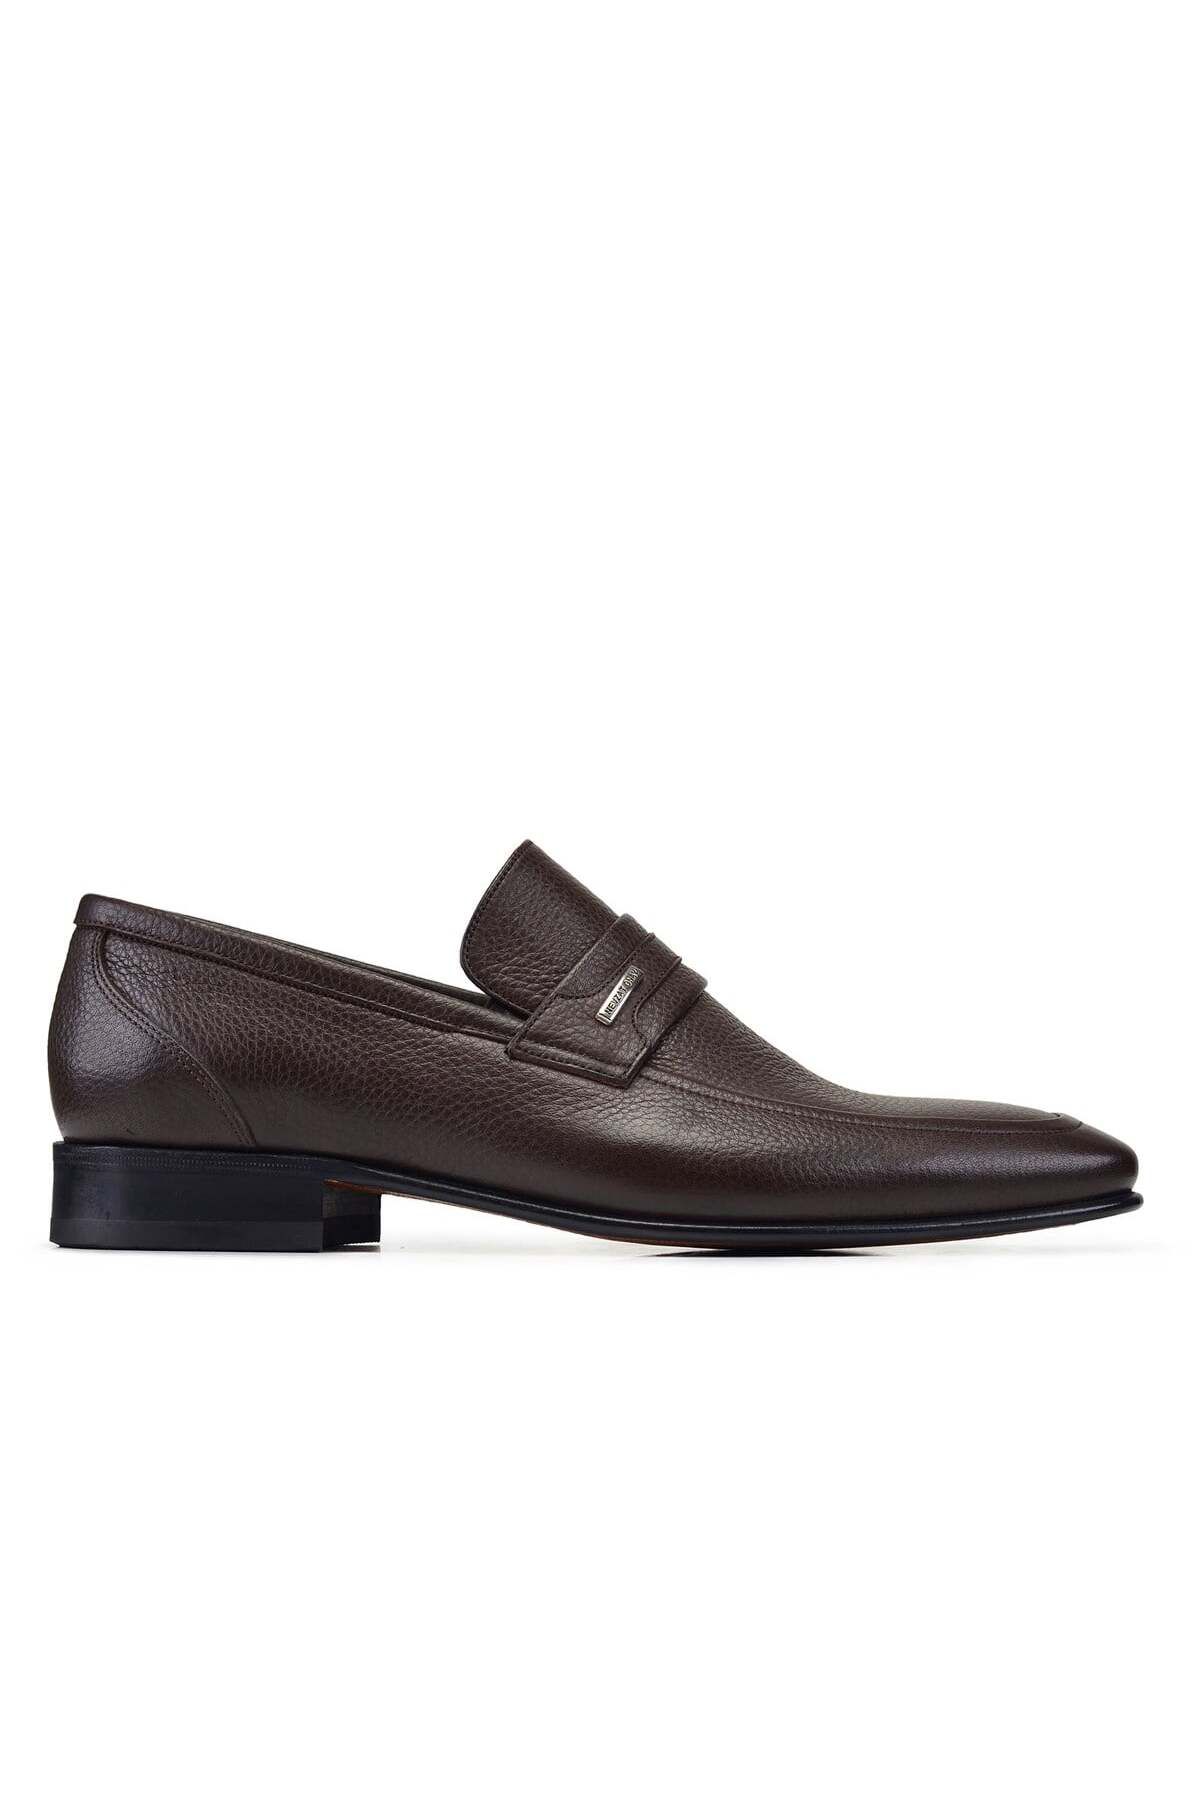 Nevzat Onay Kahverengi Klasik Loafer Kösele Erkek Ayakkabı -7000-